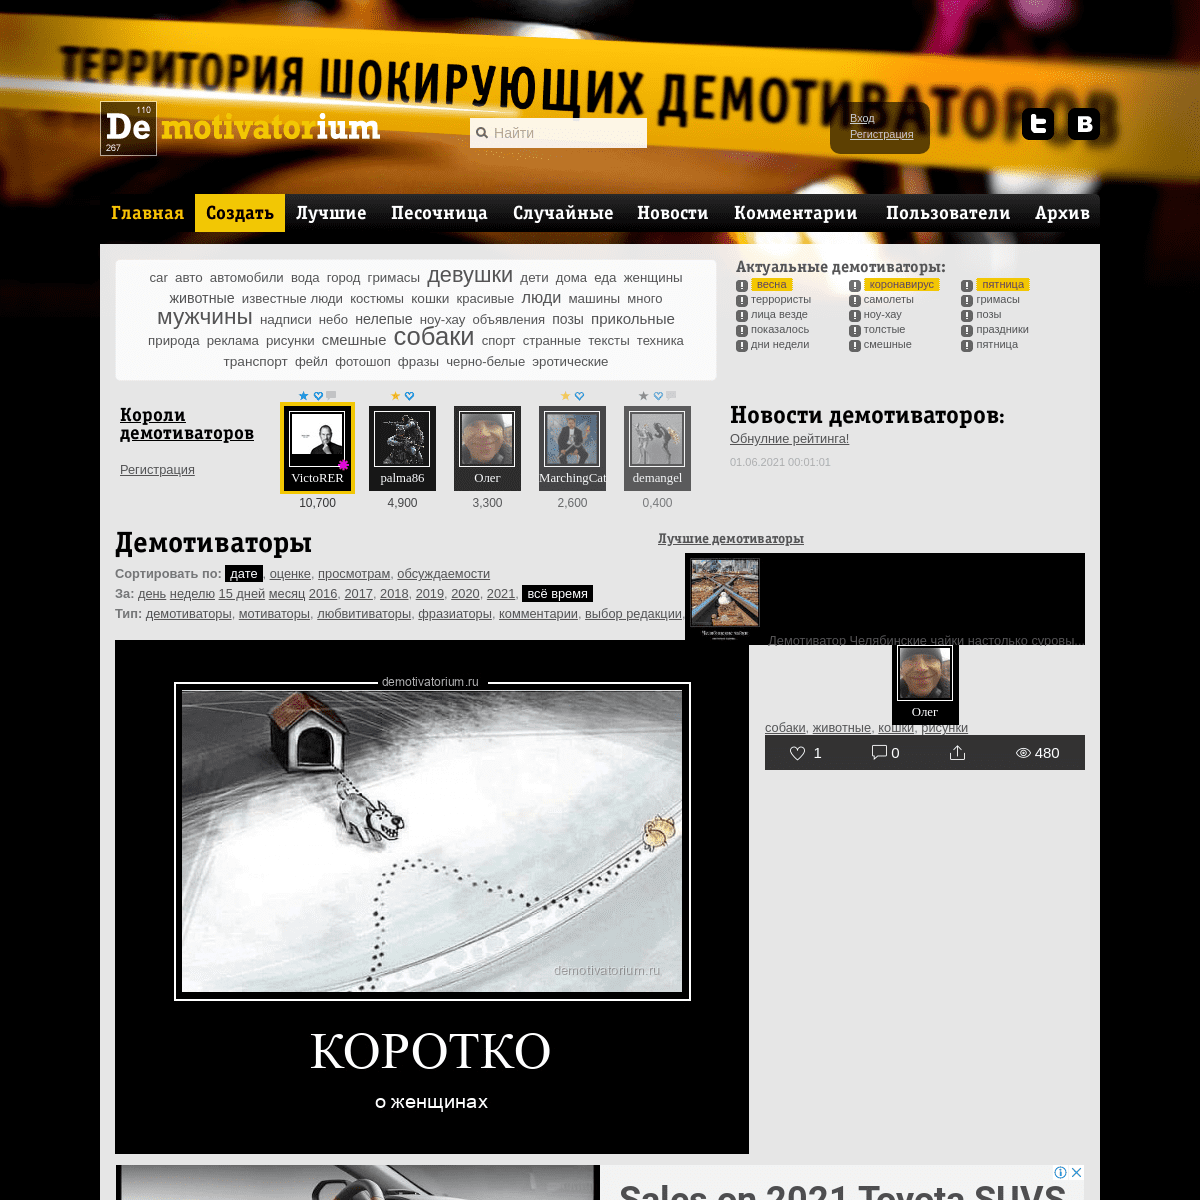 A complete backup of https://demotivatorium.ru